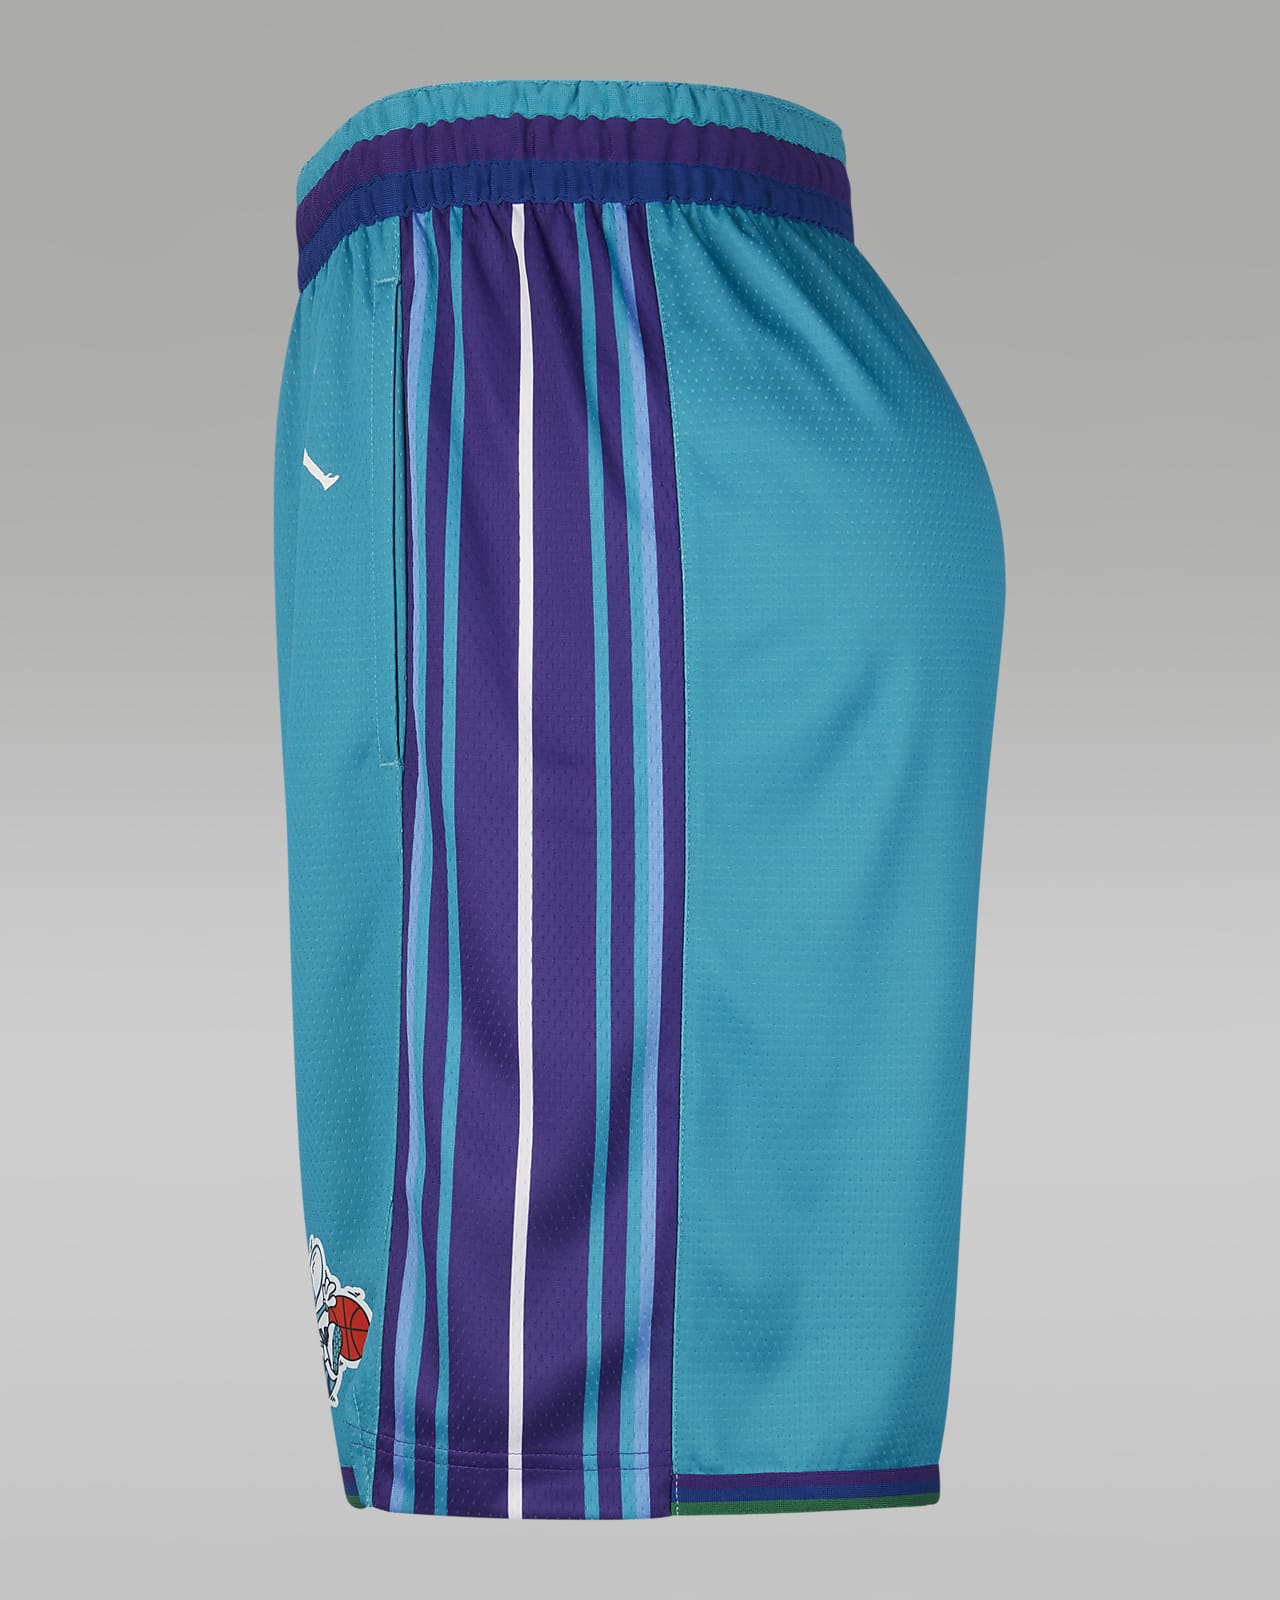 Men's Purple Shorts. Nike CA